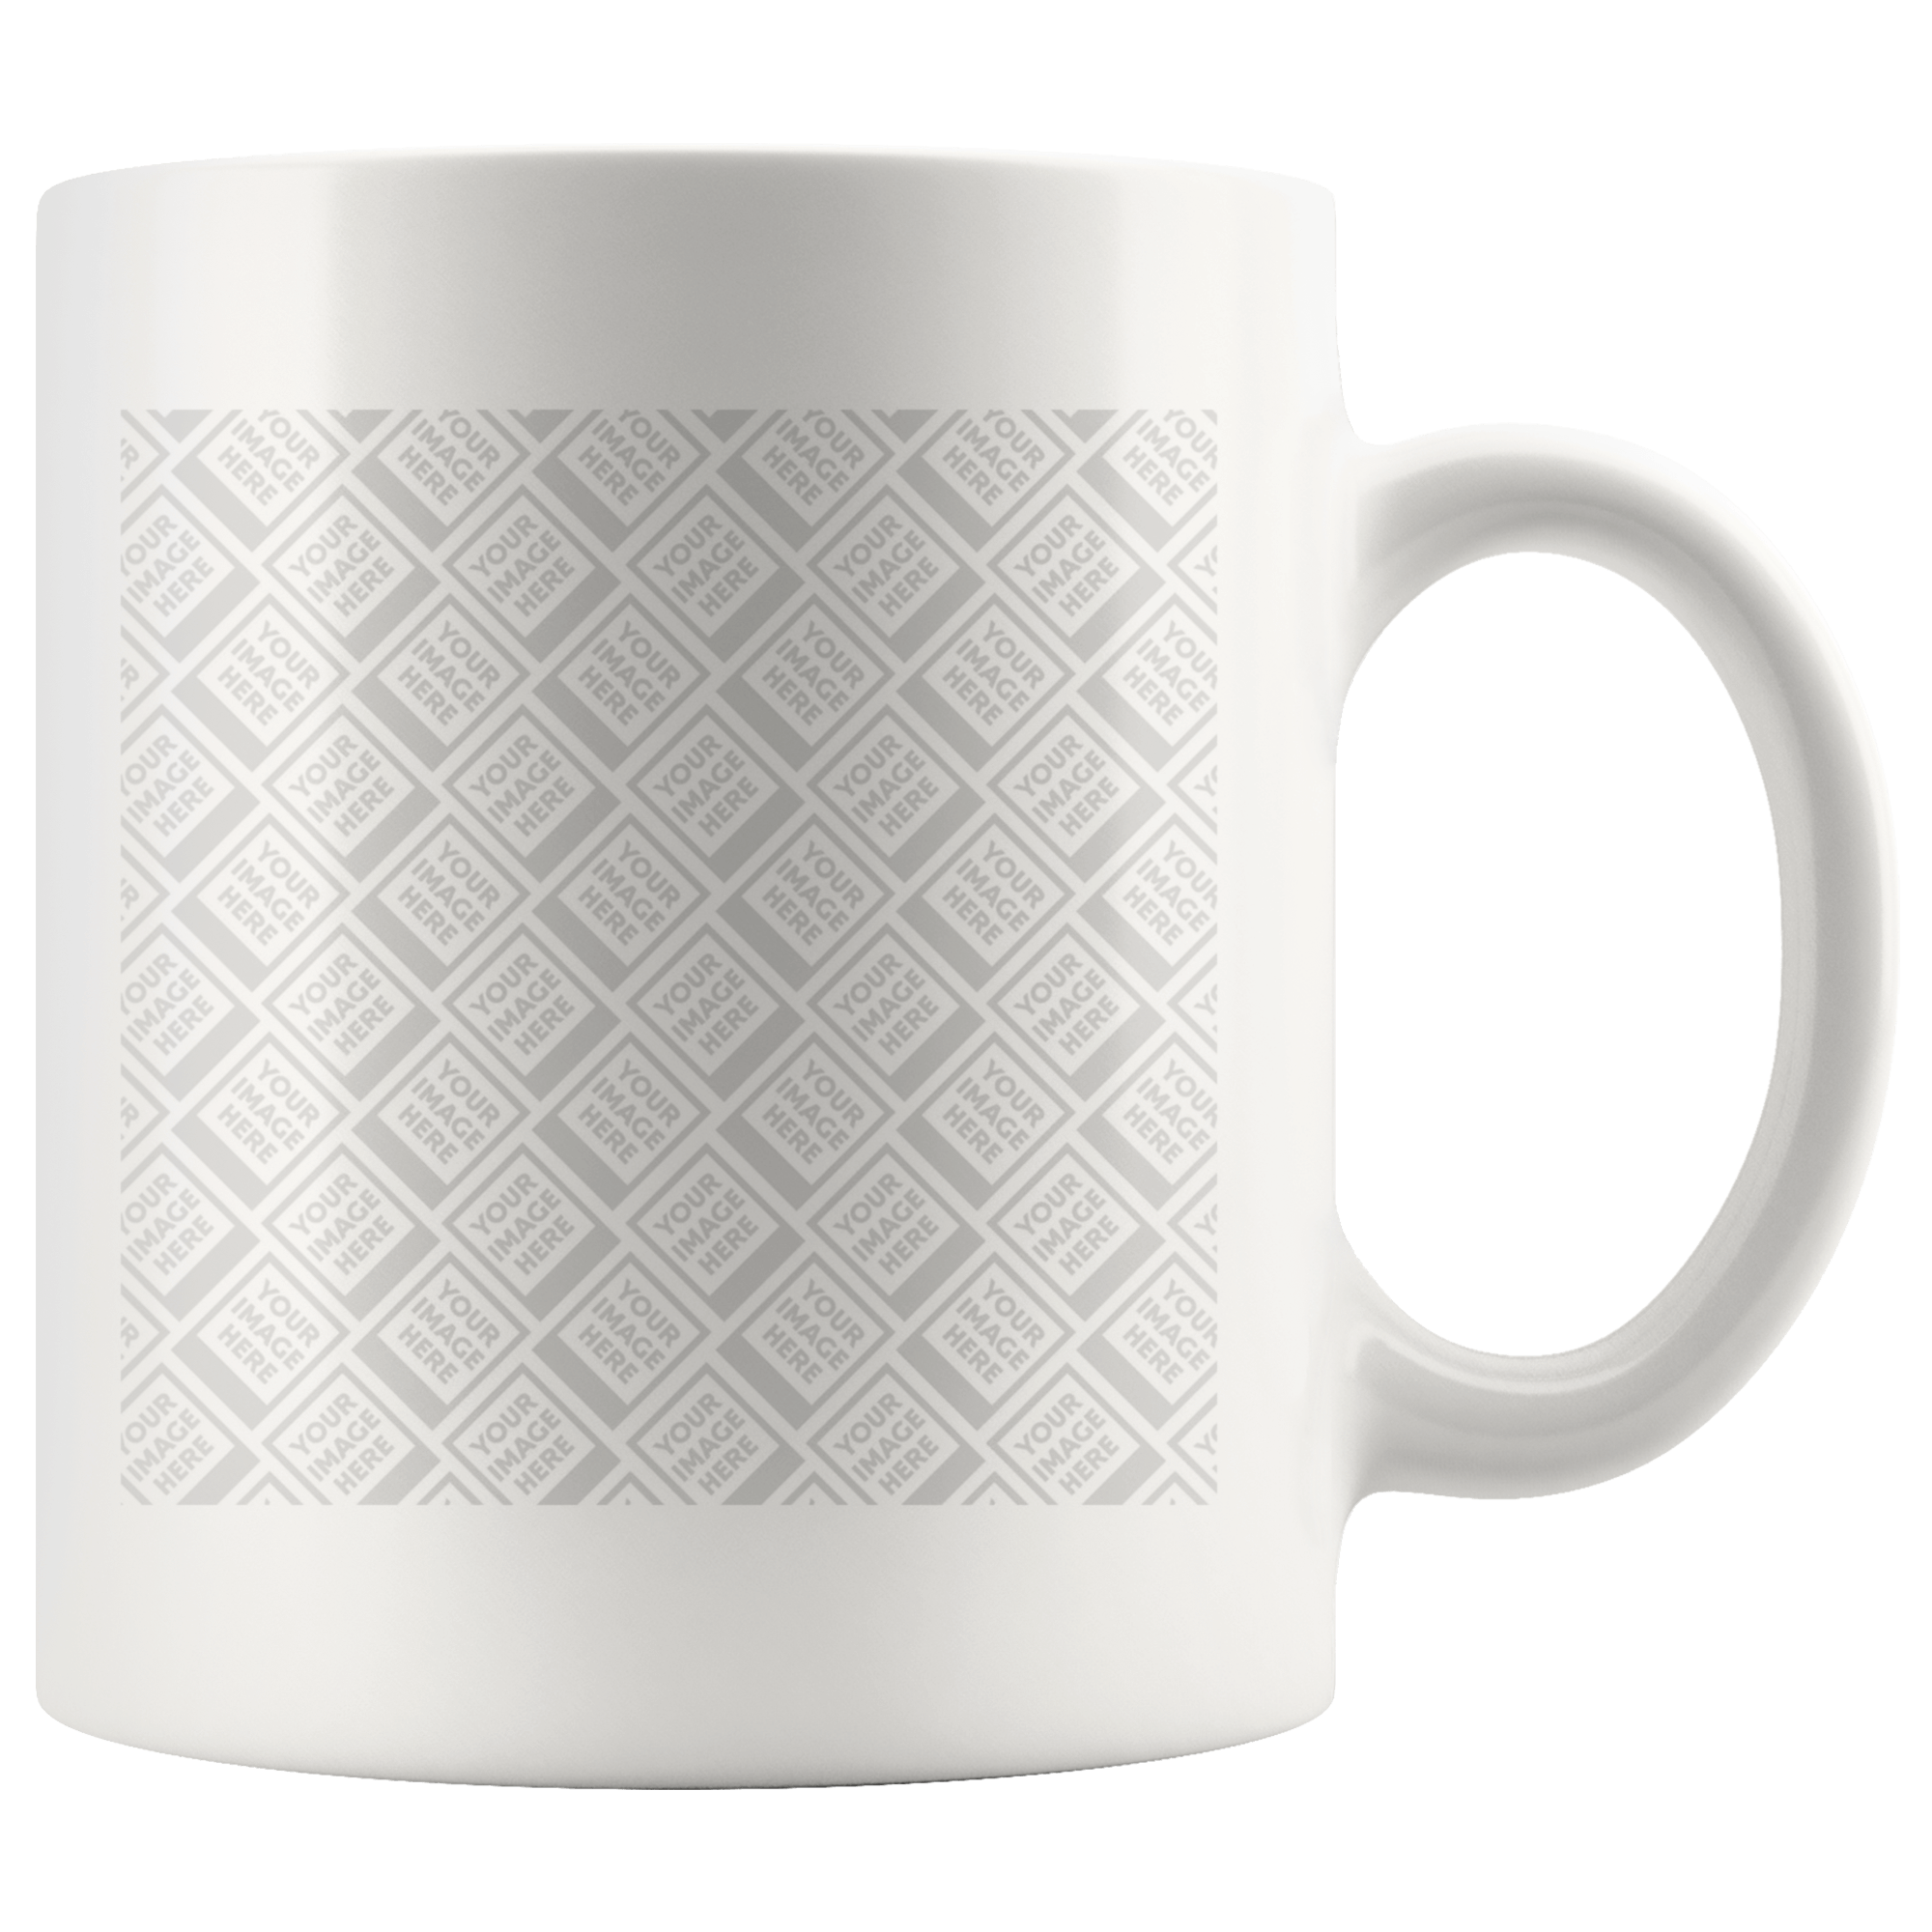 Personalized this 11oz Mug - White